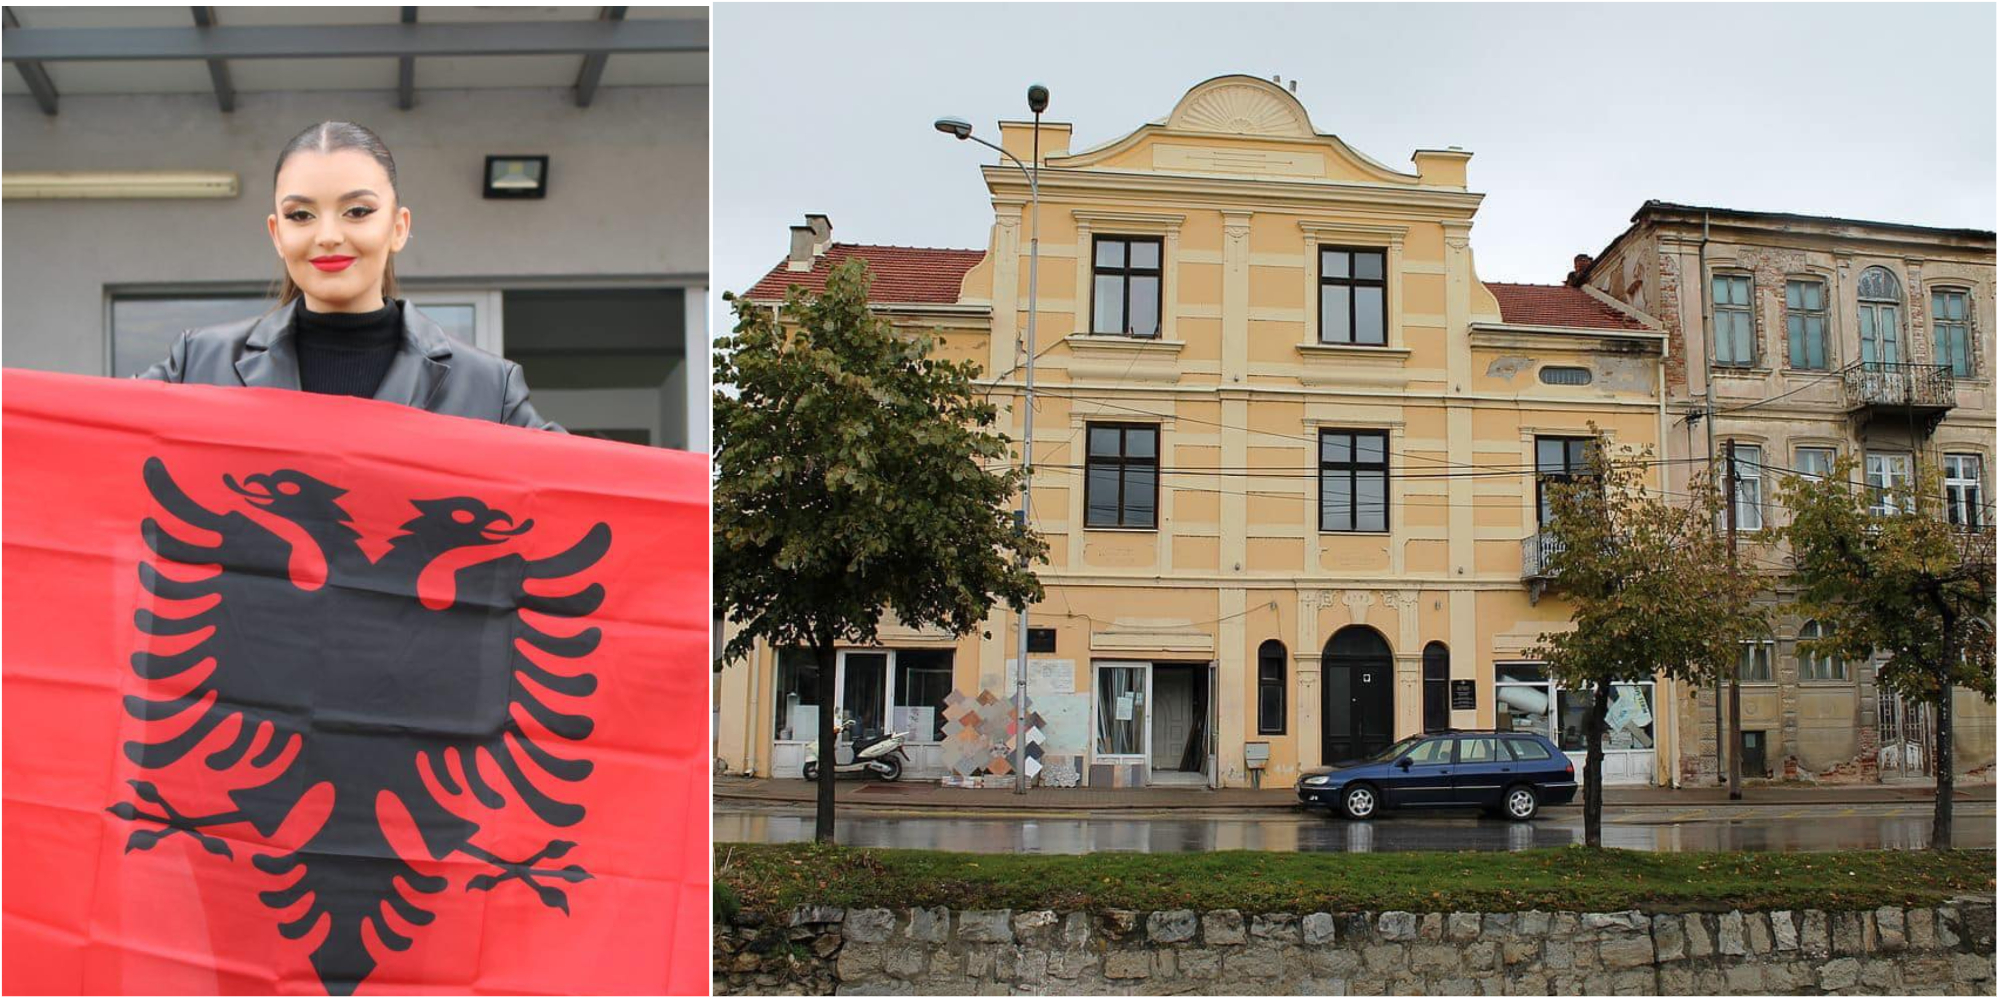 Kauza e veçantë/ Qyteti i Kongresit të alfabetit pa bibliotekë me libra shqip, studentja ‘sfidon’ politikën